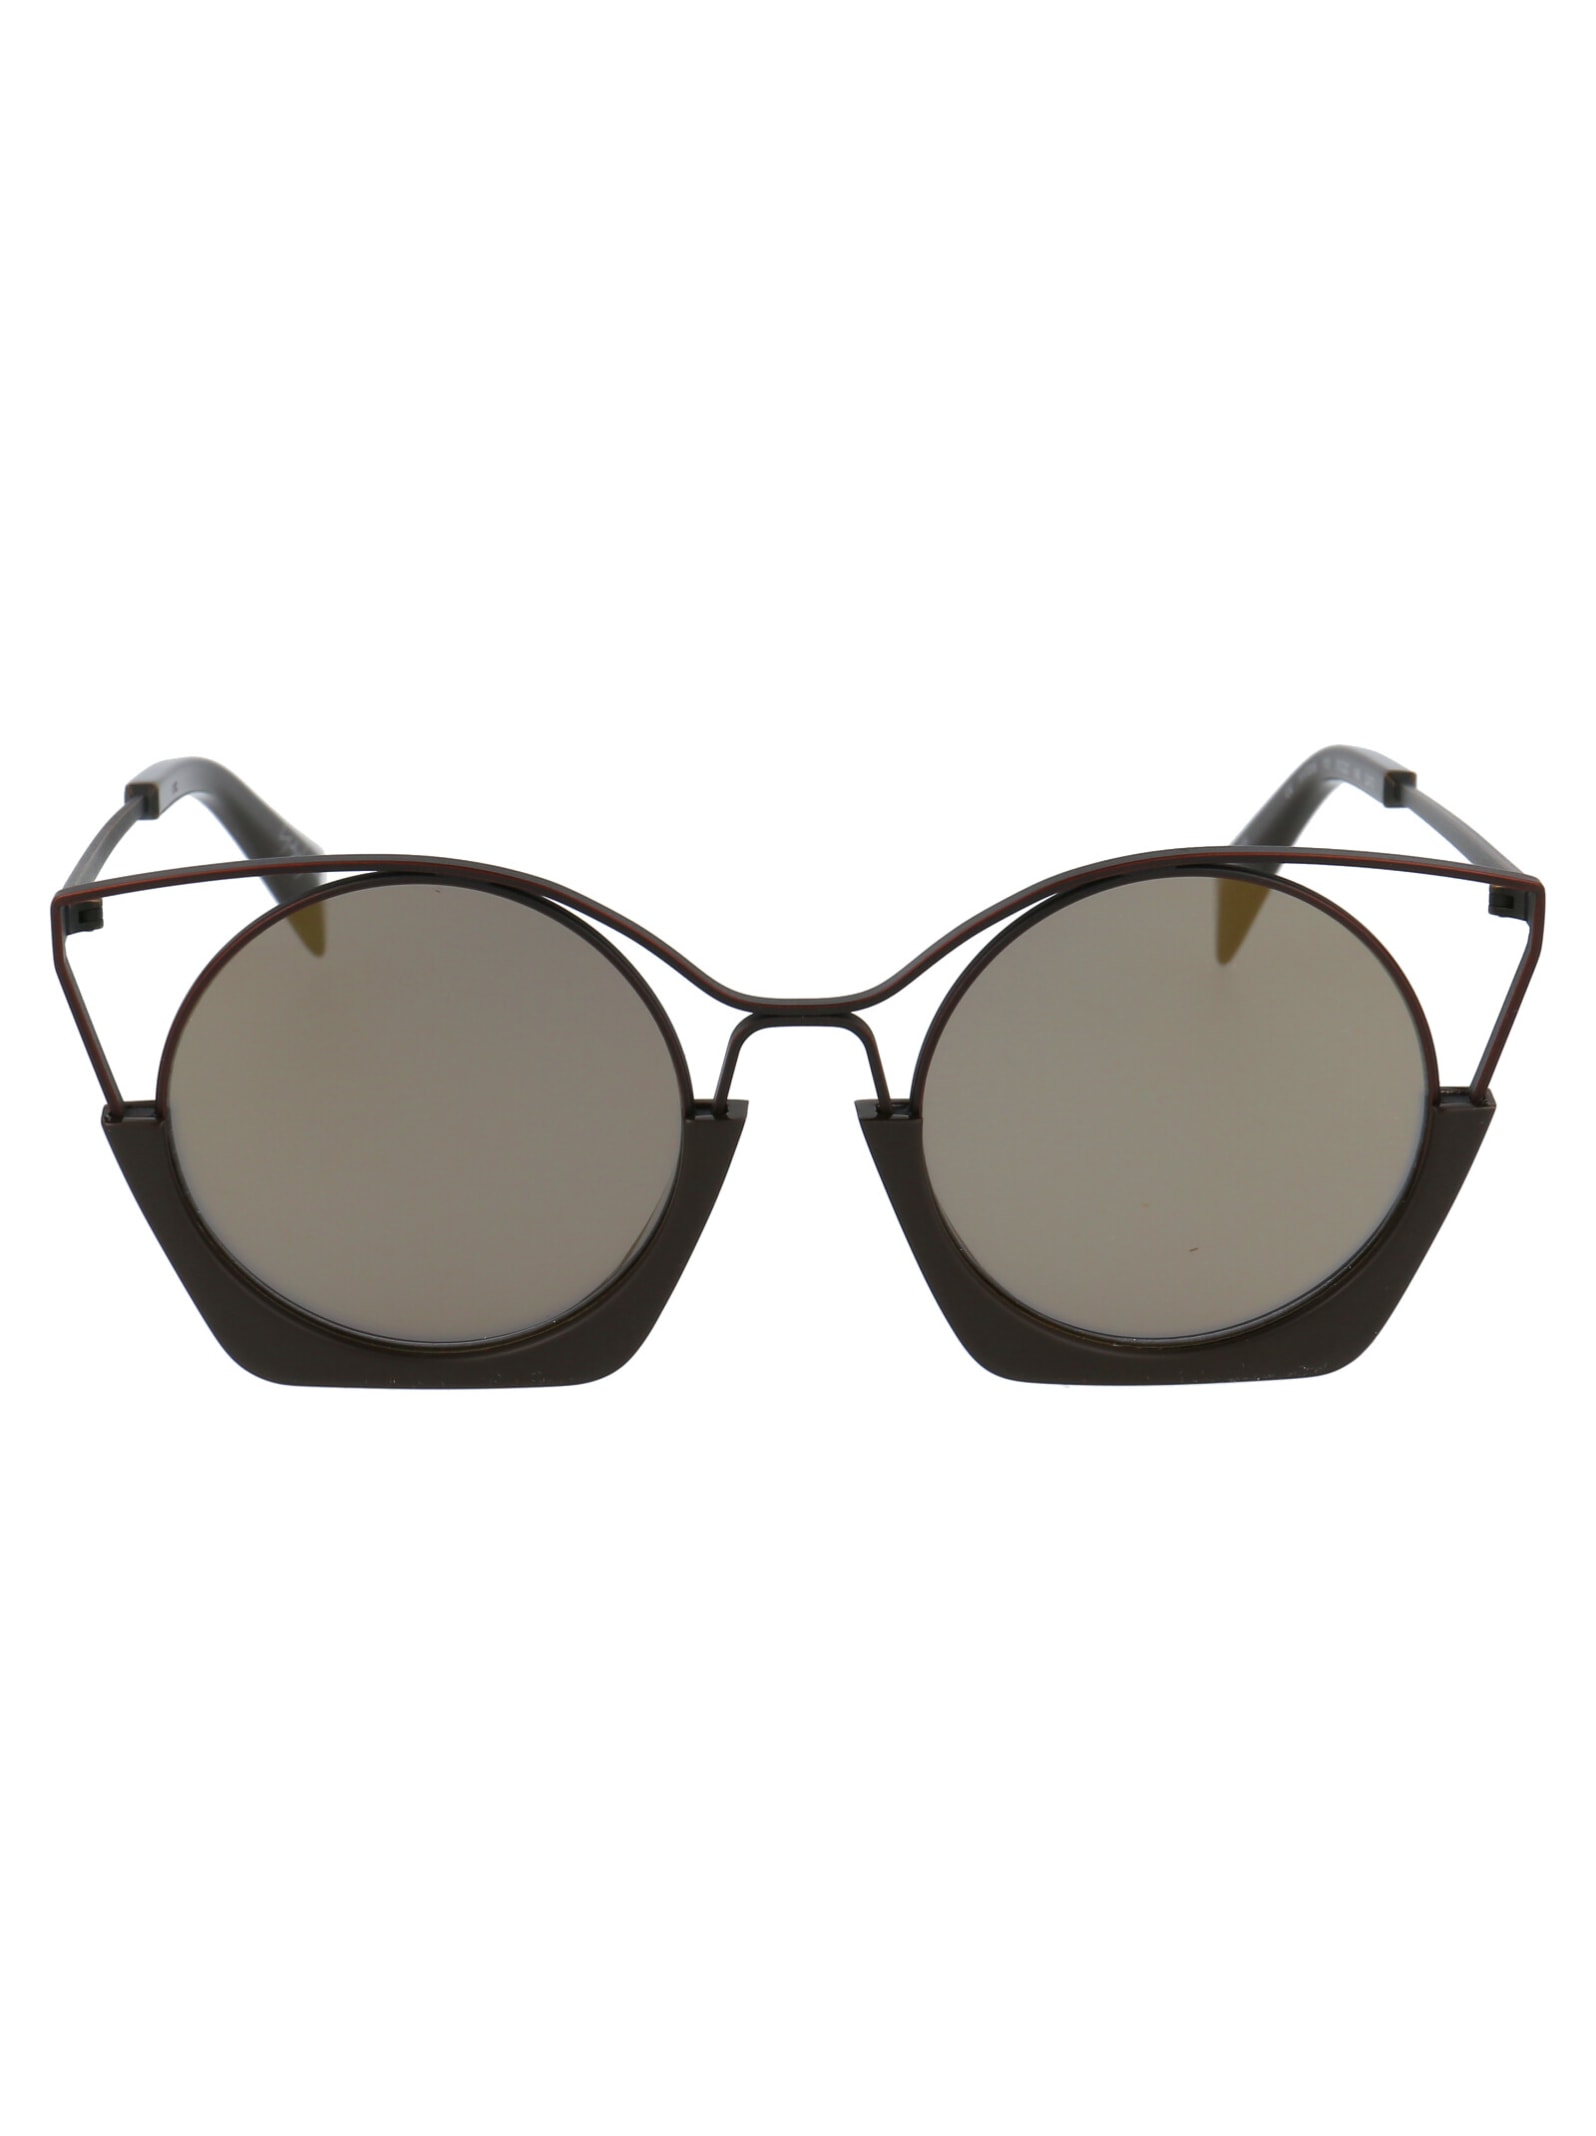 Yohji Yamamoto Yy7016 Sunglasses